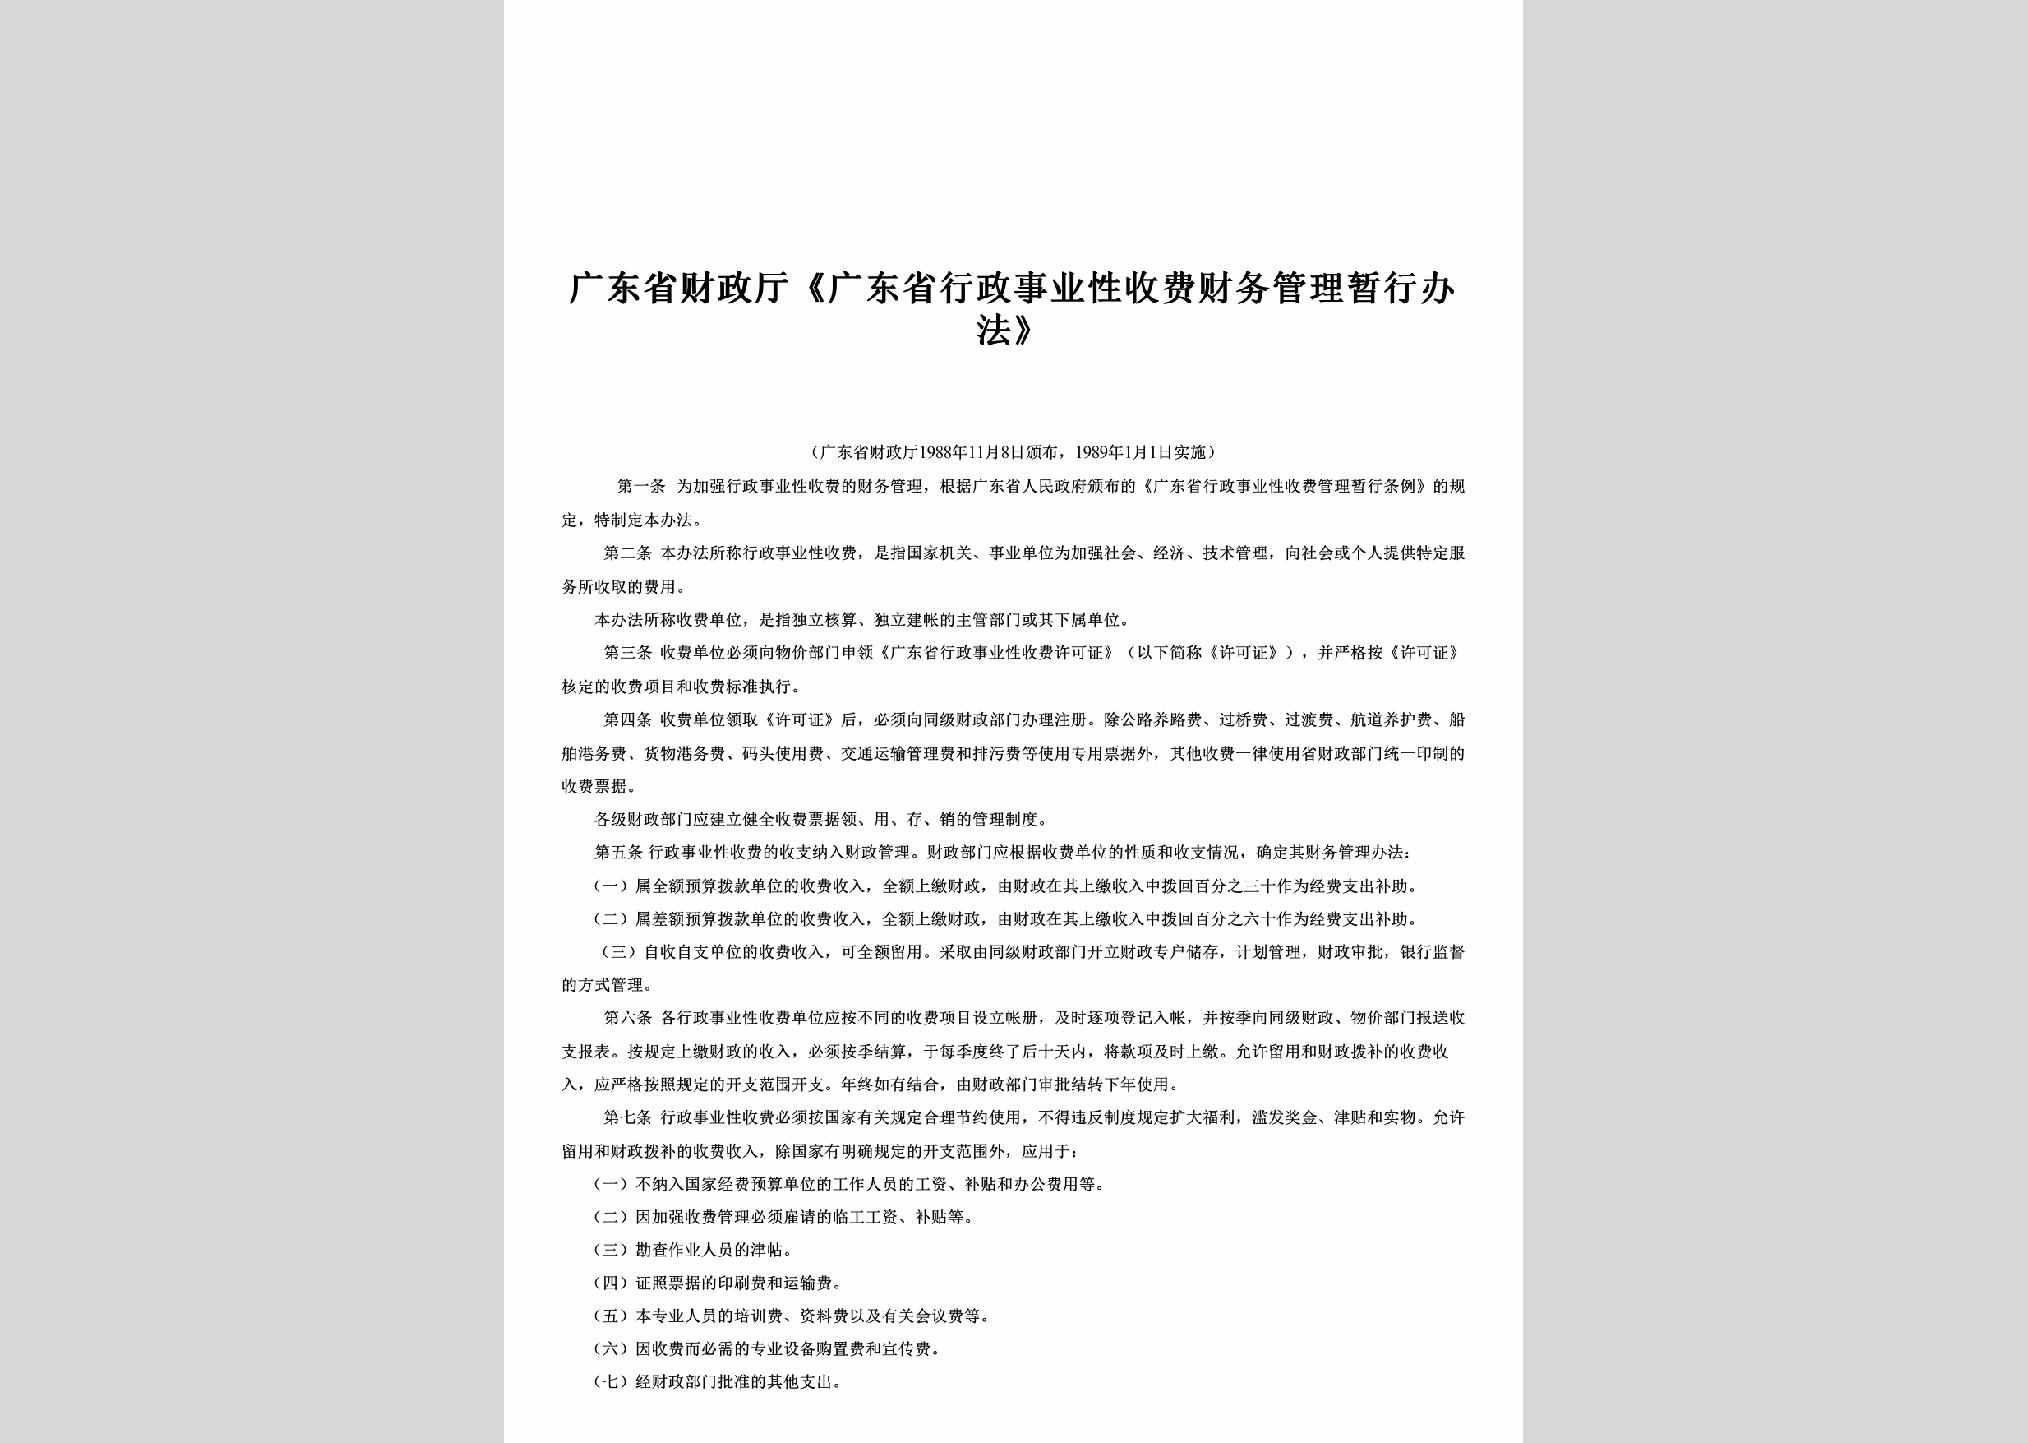 GD-XZSFGLBF-1989：《广东省行政事业性收费财务管理暂行办法》